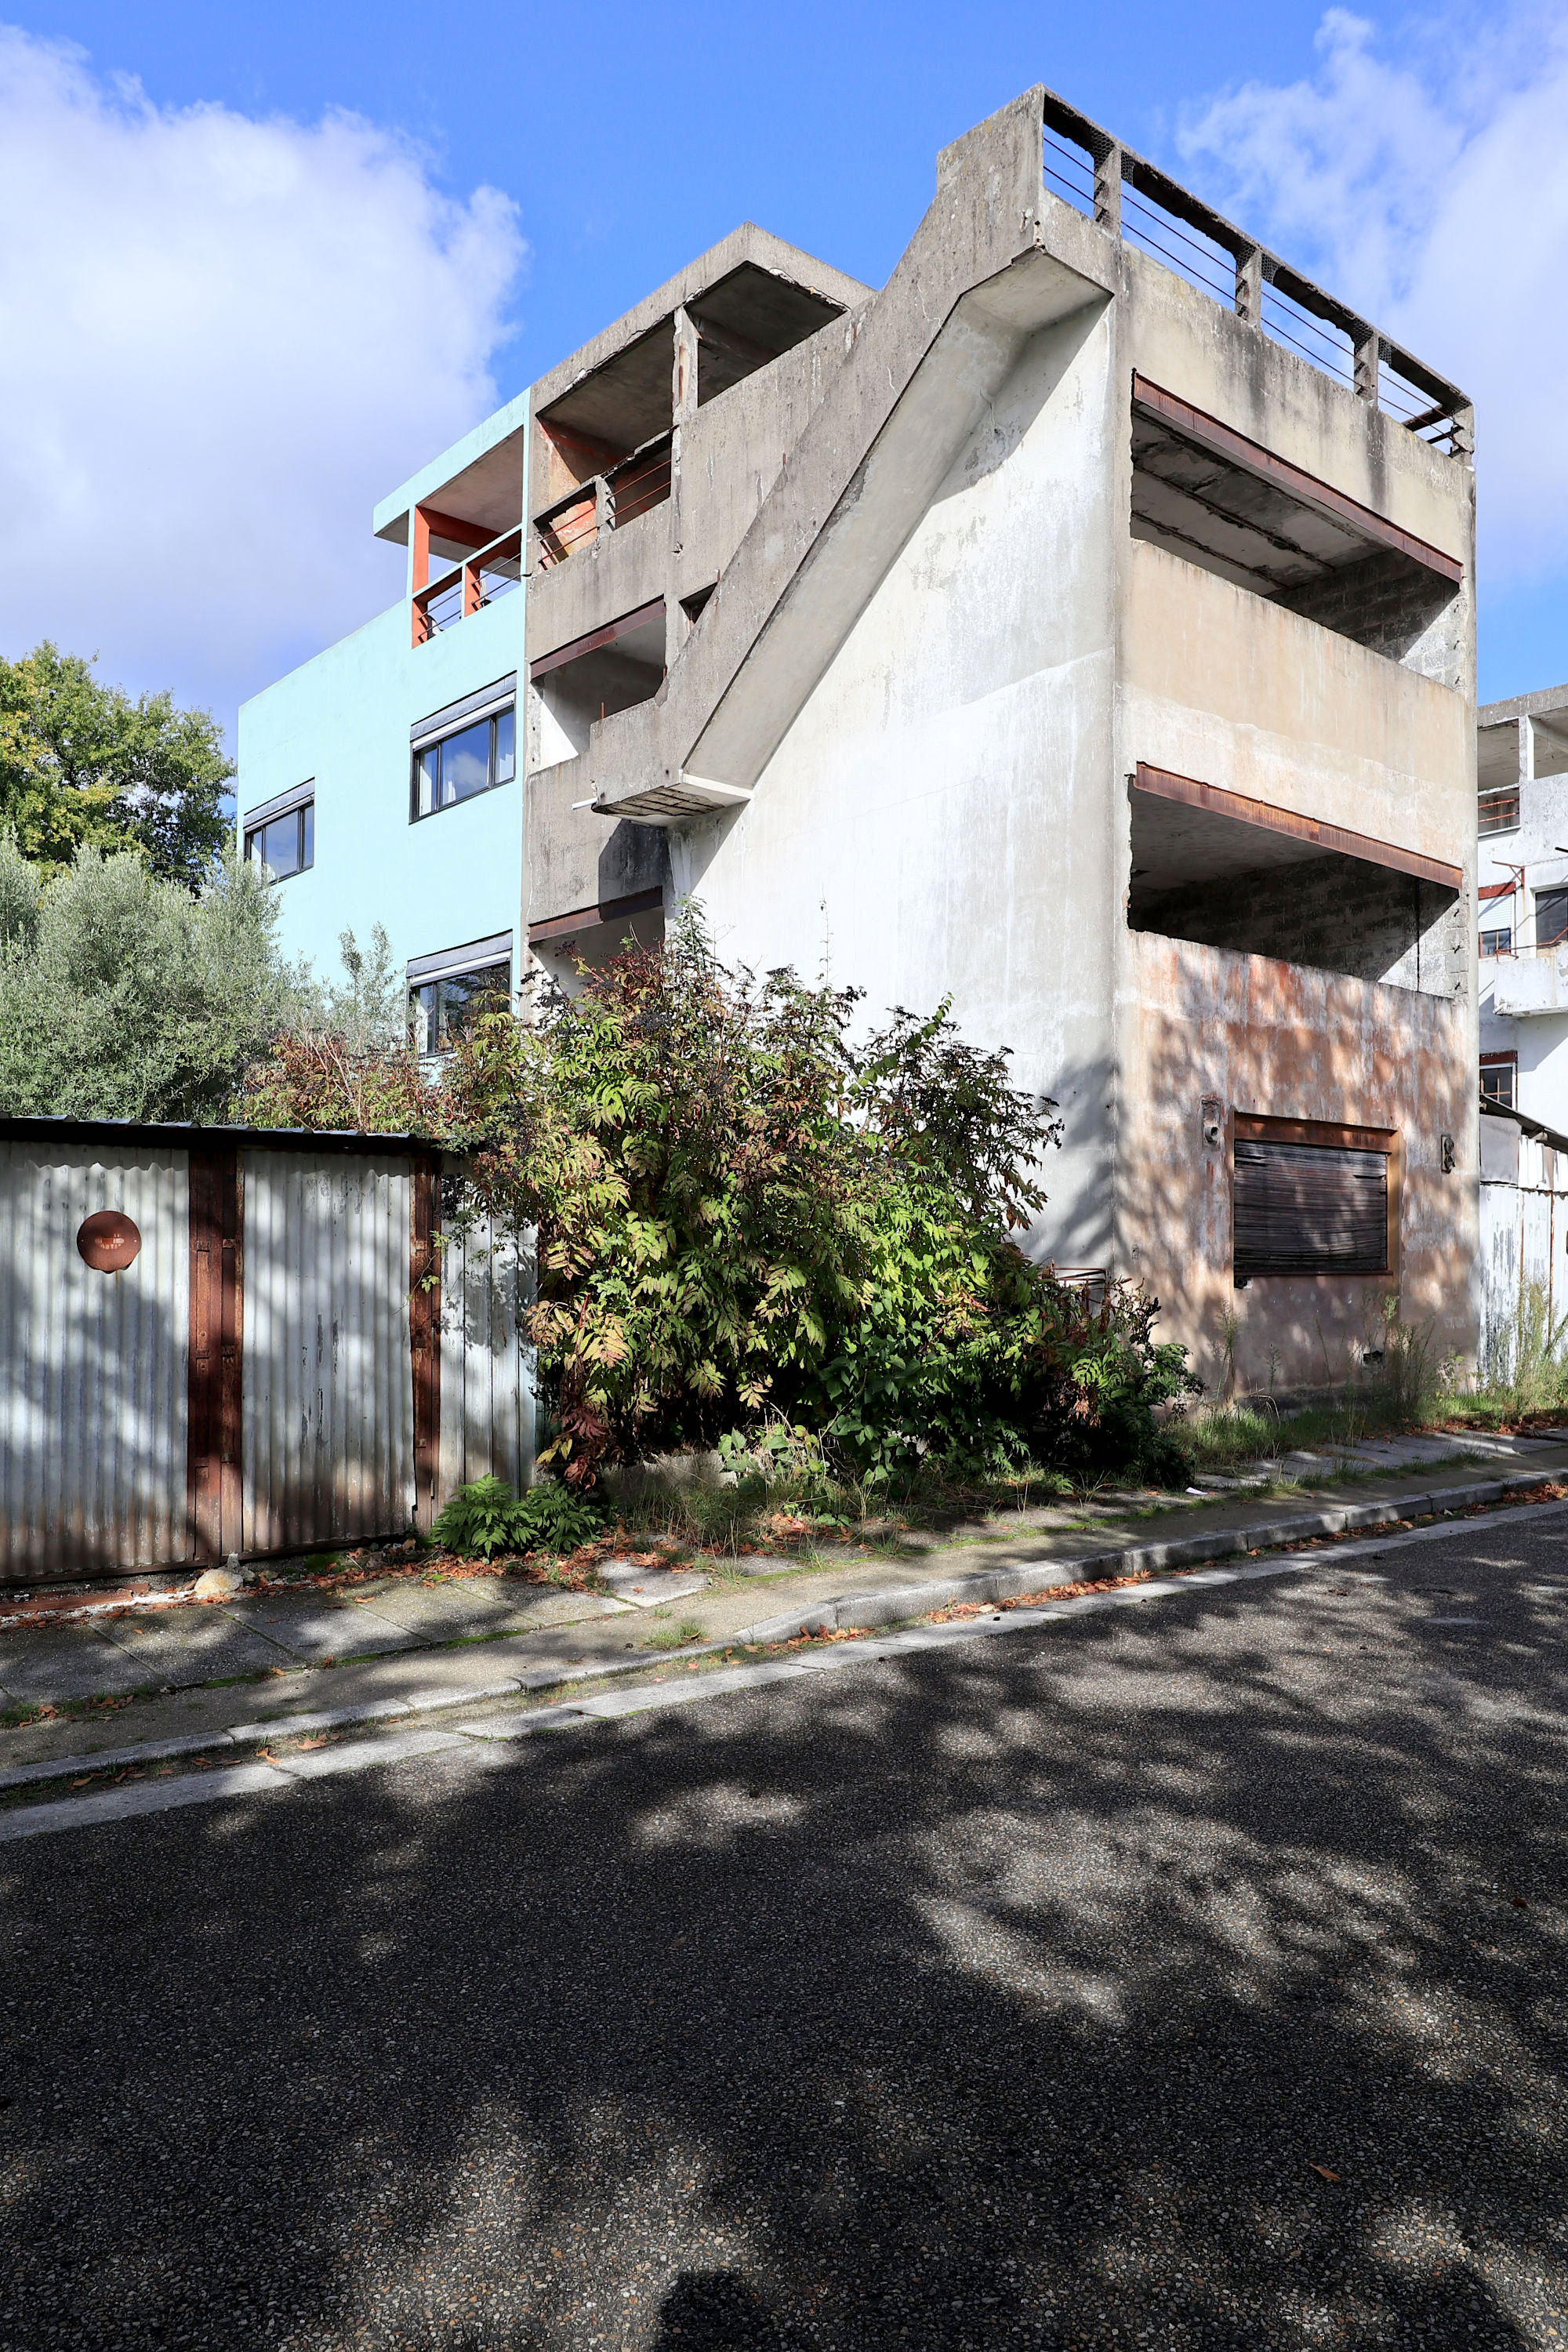 Der Unternehmer traf den Utopisten und beauftragte ihn umgehend mit der Gestaltung einer Gartenstadtsiedlung für seine Arbeiter: ein Meilenstein für Le Corbusier! 